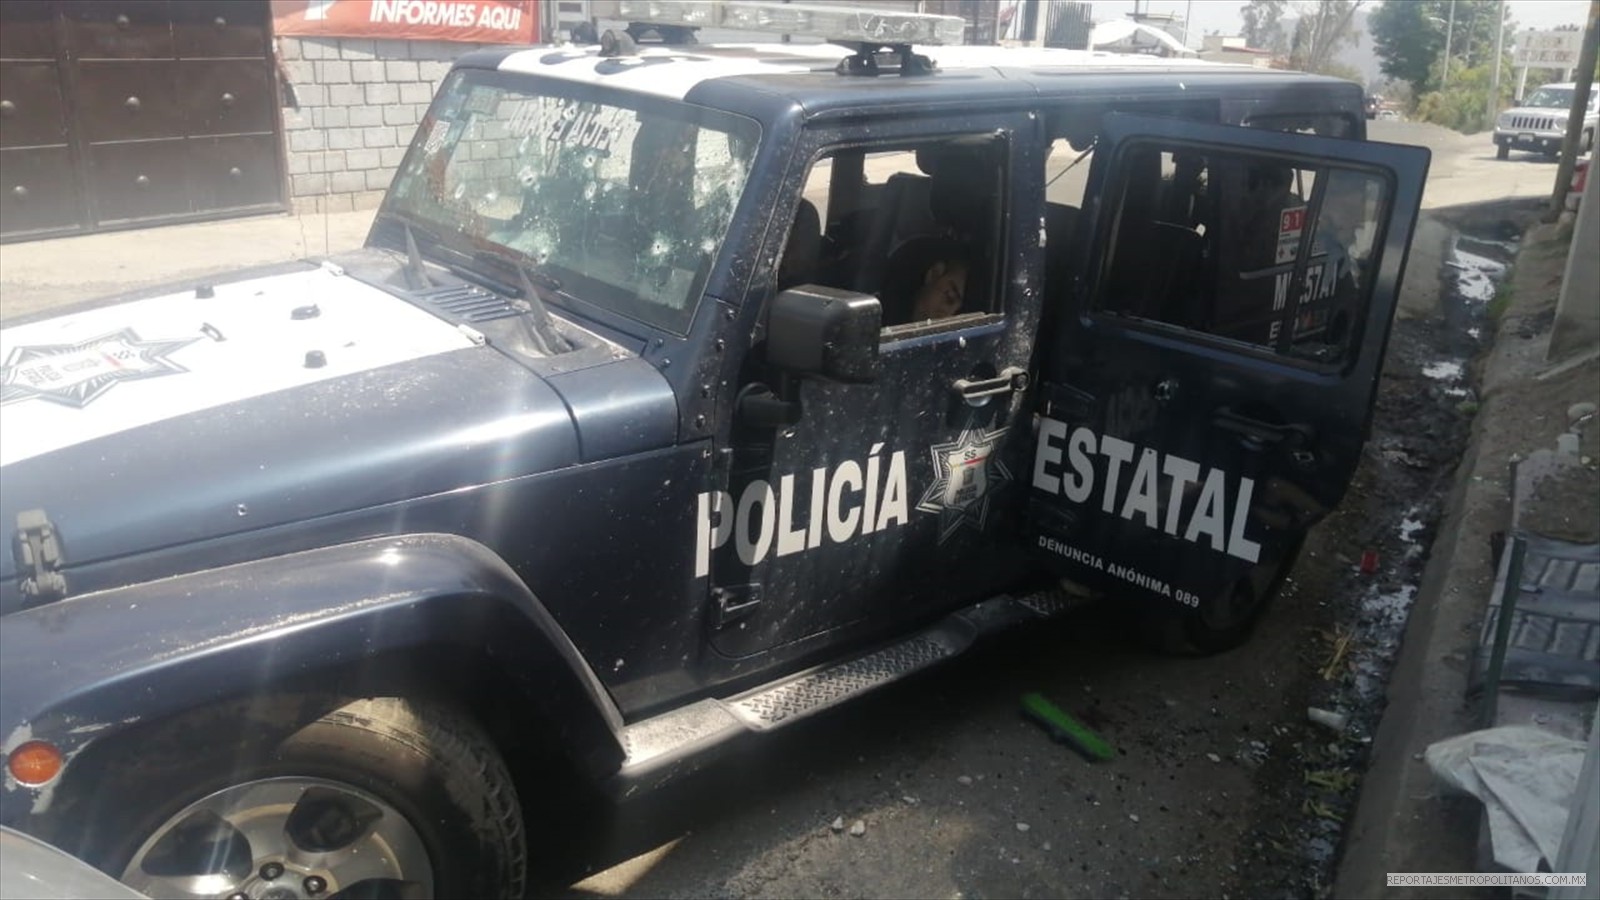 “CACERIA” DE POLICIAS EN MEXICO